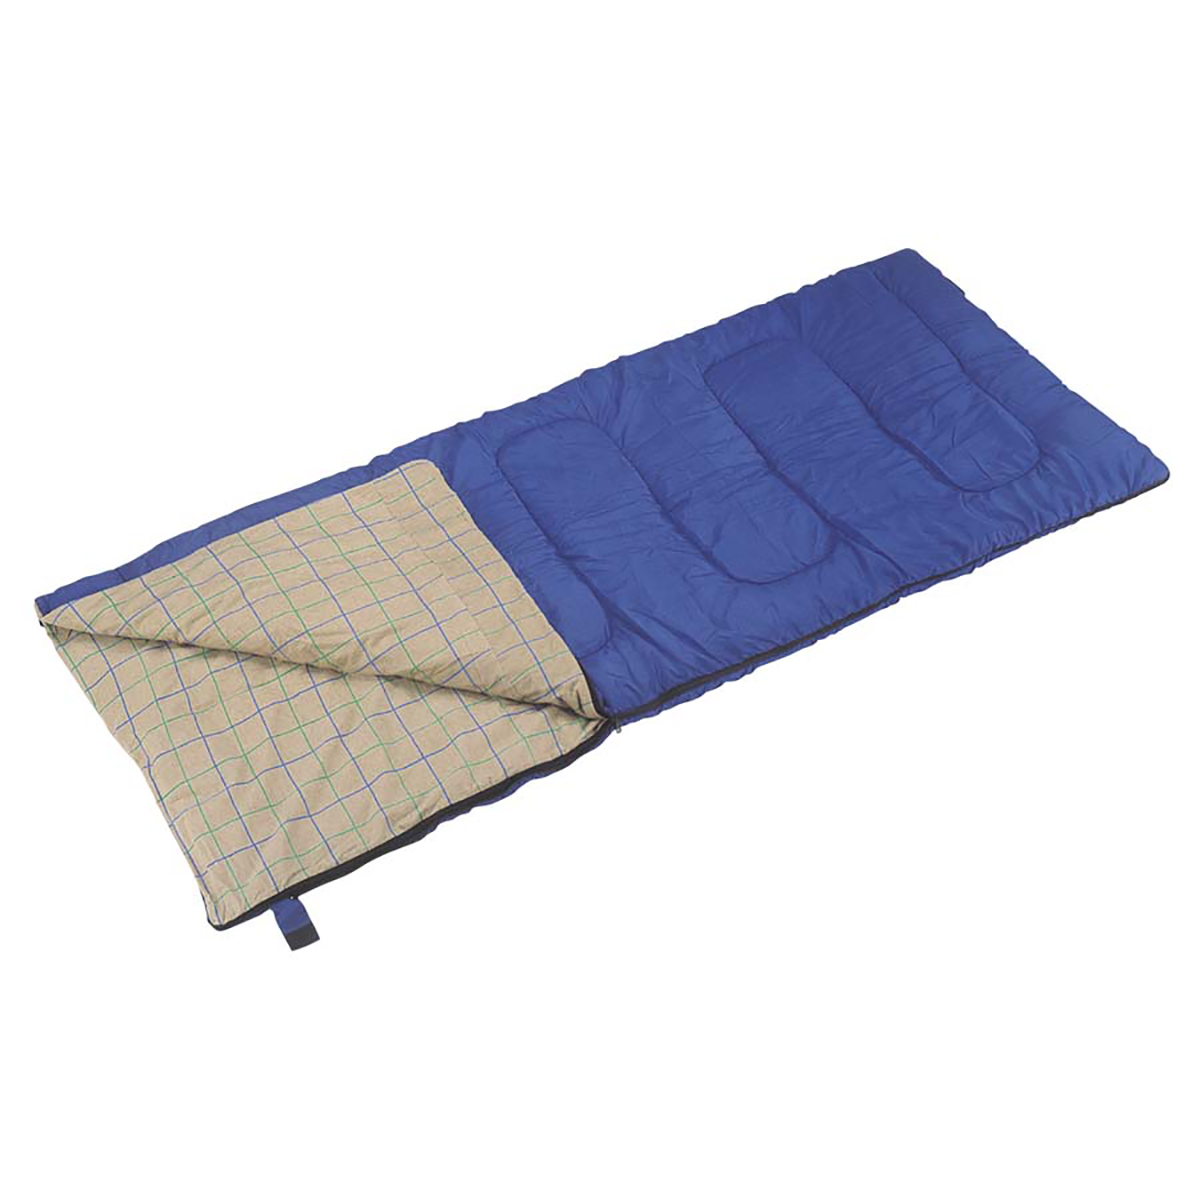 ウォッシャブル シュラフ(寝袋)85×190cm - アウトドア・キャンプ用品 